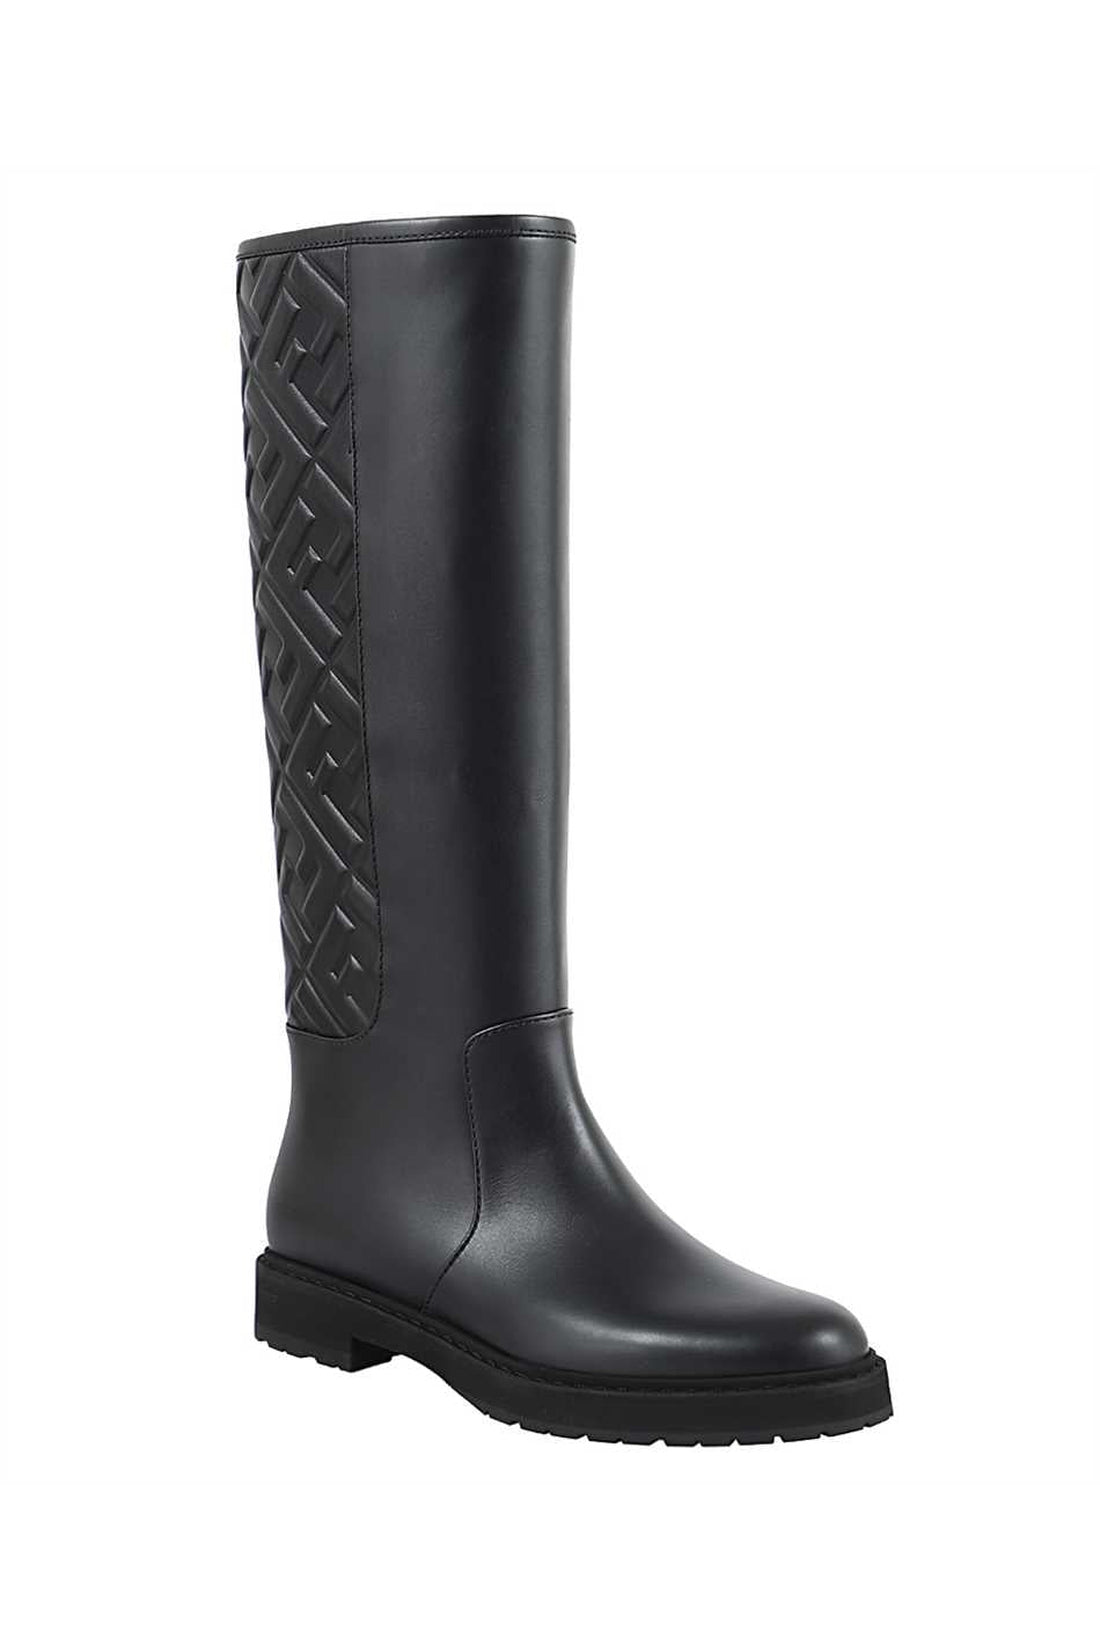 Fendi-OUTLET-SALE-Leather boots-ARCHIVIST